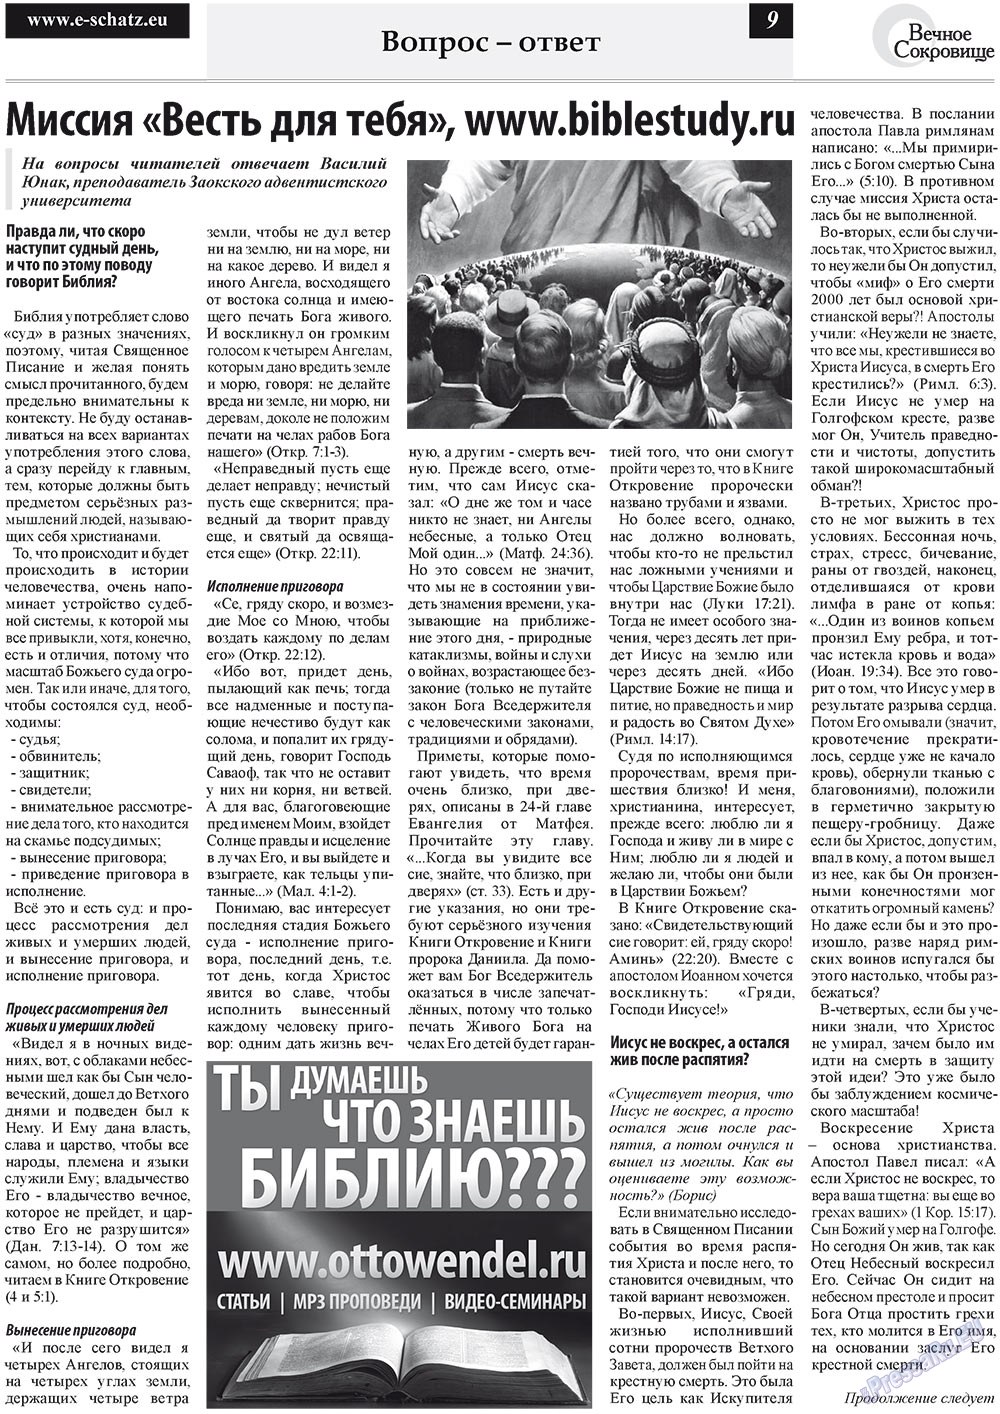 Вечное сокровище (газета). 2011 год, номер 4, стр. 9